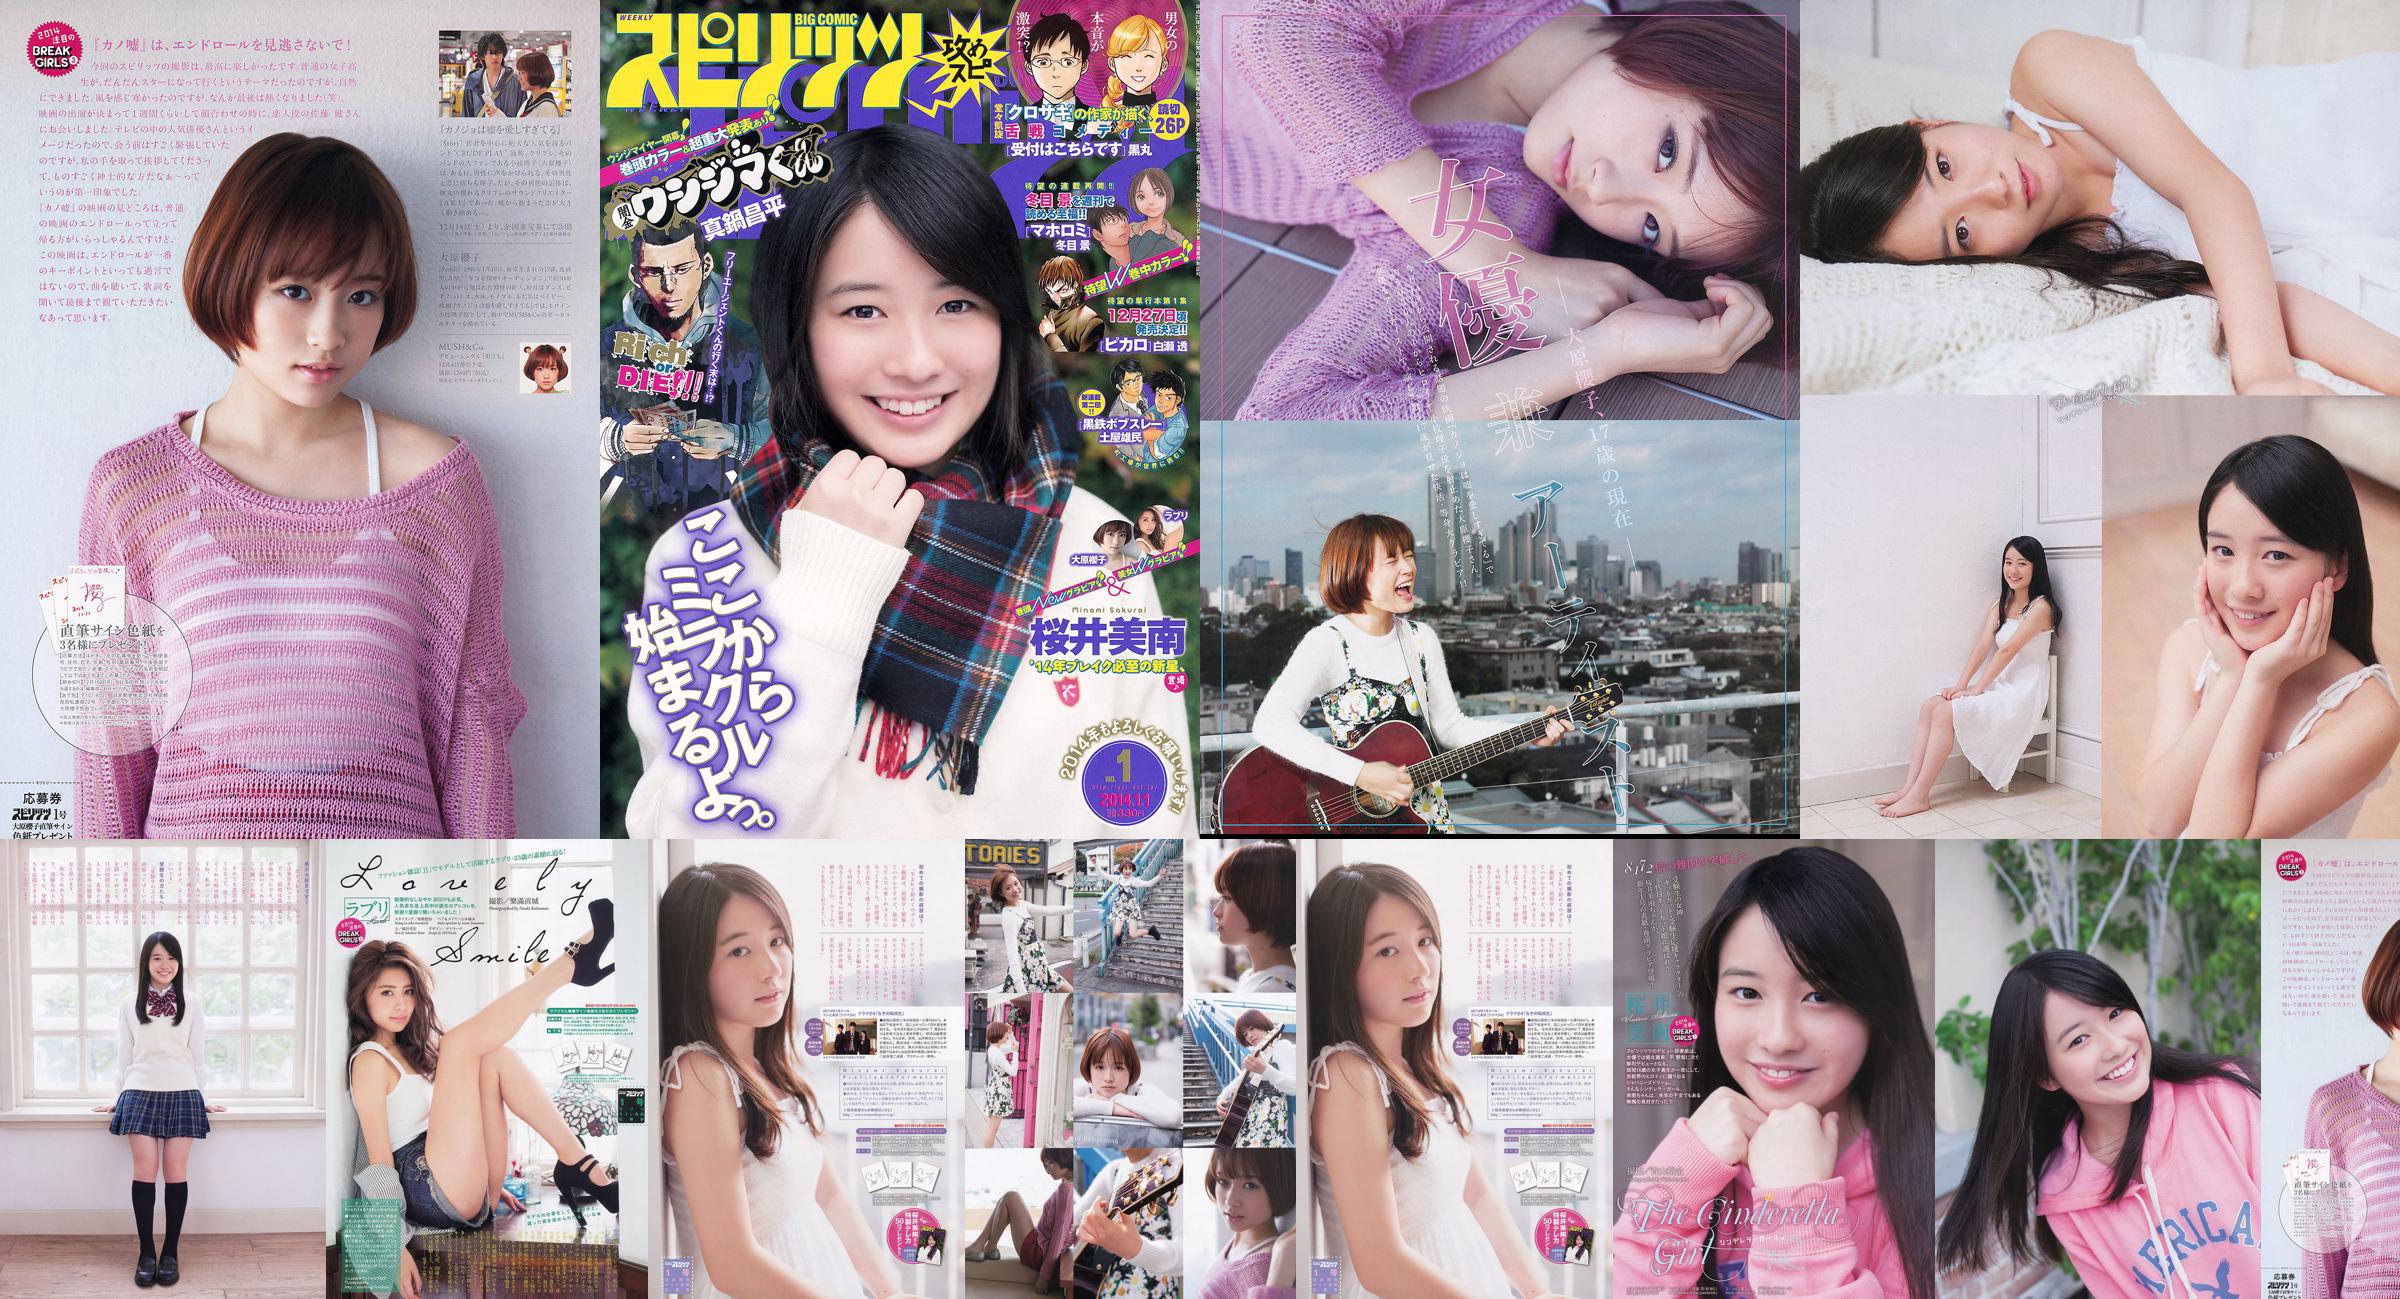 [Weekly Big Comic Spirits] Sakurai Minan Ohara Sakurako 2014 nr 01 Photo Magazine No.61a44b Strona 1